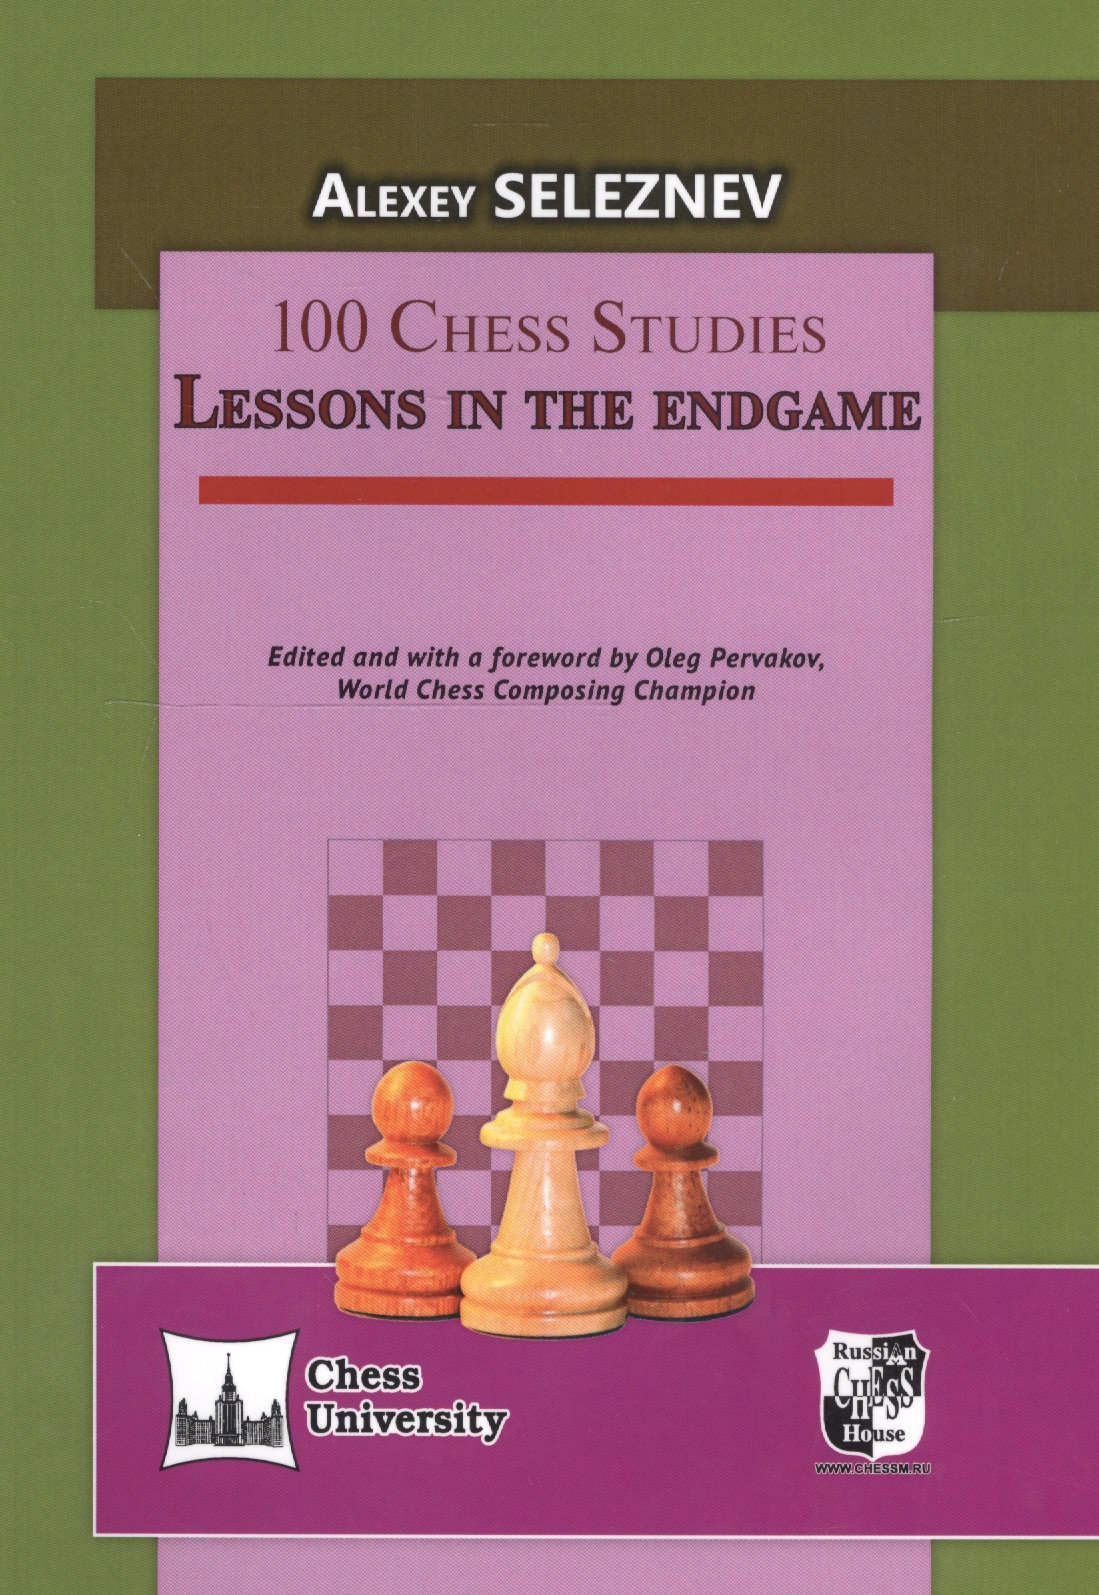 seleznev alexey 100 chess studies Seleznev Alexey 100 Chess Studies